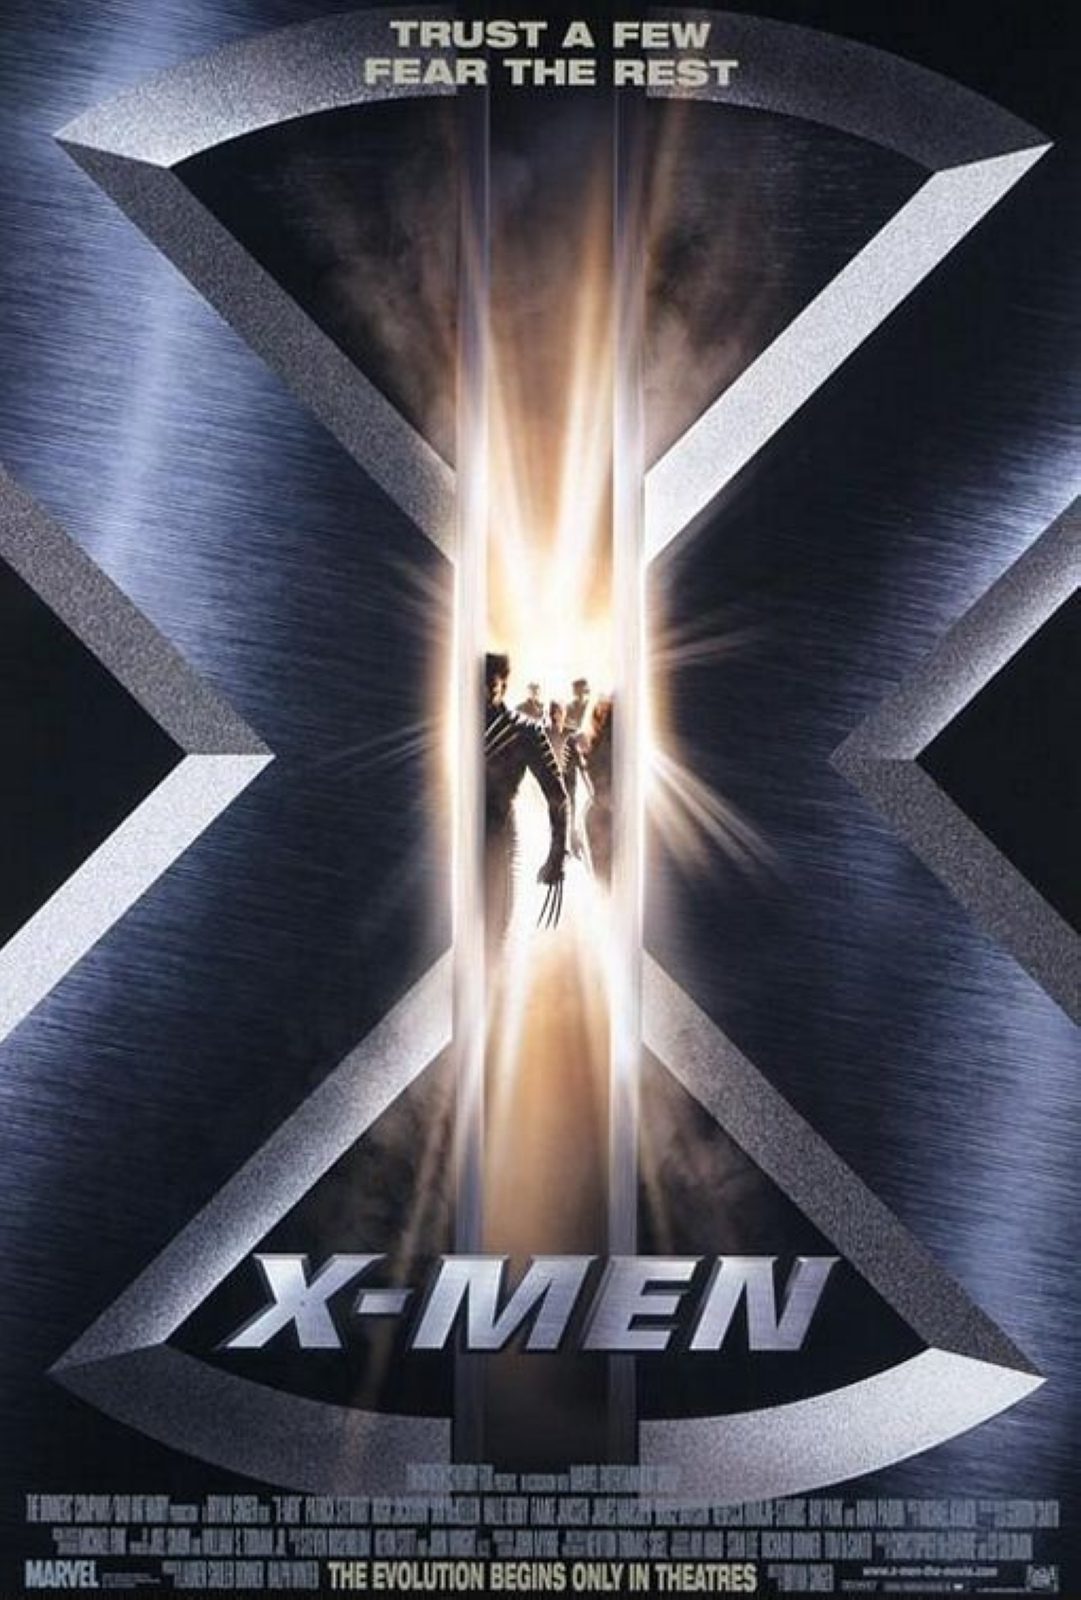 ดูหนังออนไลน์ฟรี X-Men 1 เอ็กซ์ เม็น ศึกมนุษย์พลังเหนือโลก